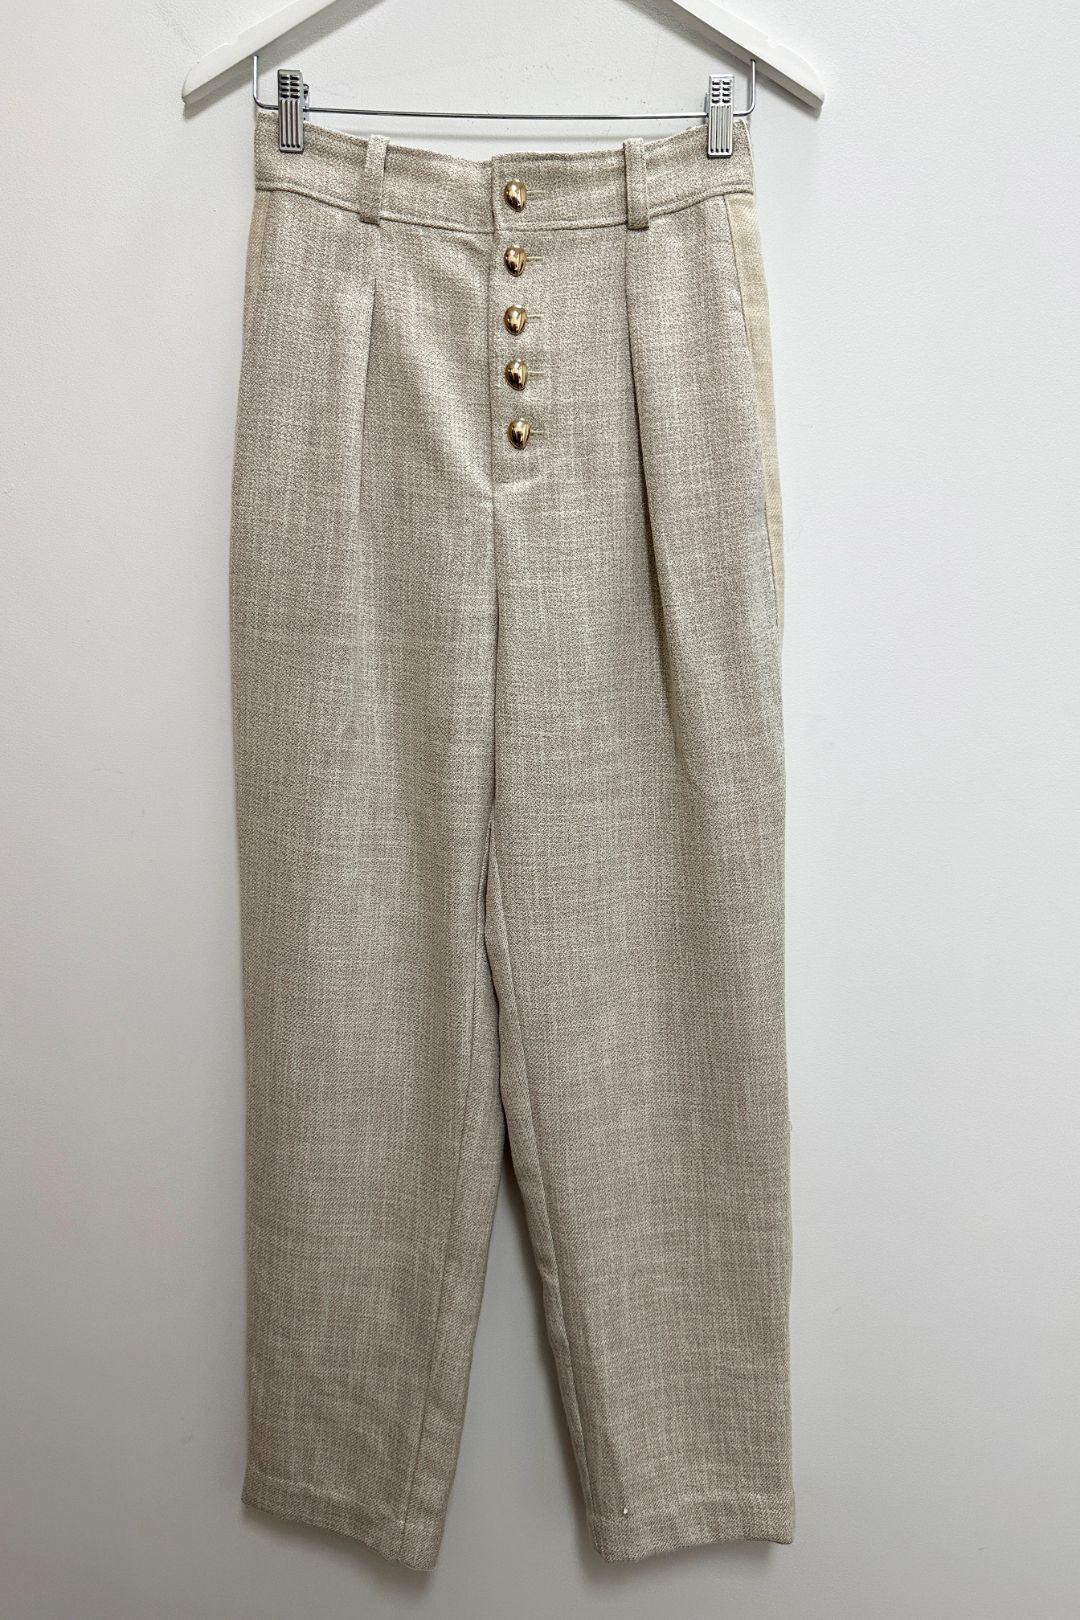 Acler Tweed High Waist Pants in Beige